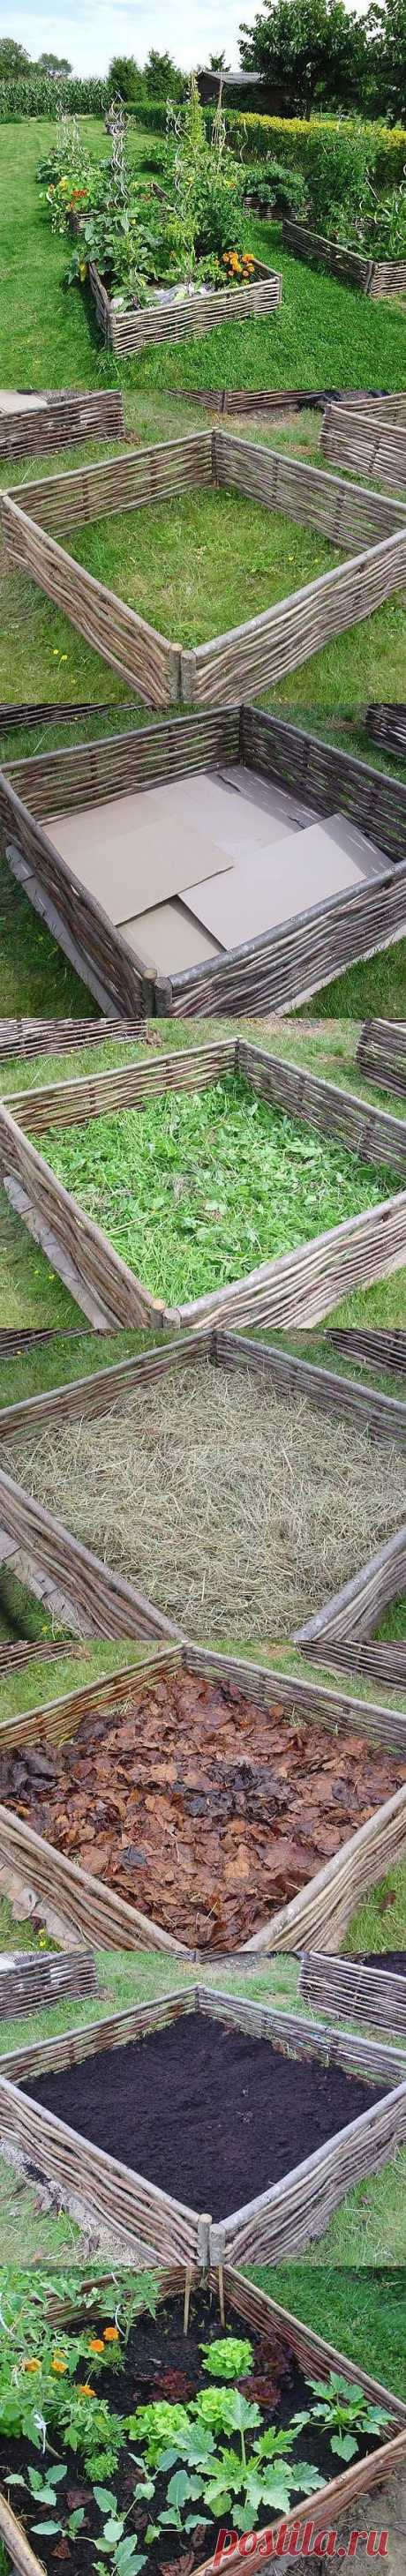 Building a lasagna raised bed garden | Garden and Yard